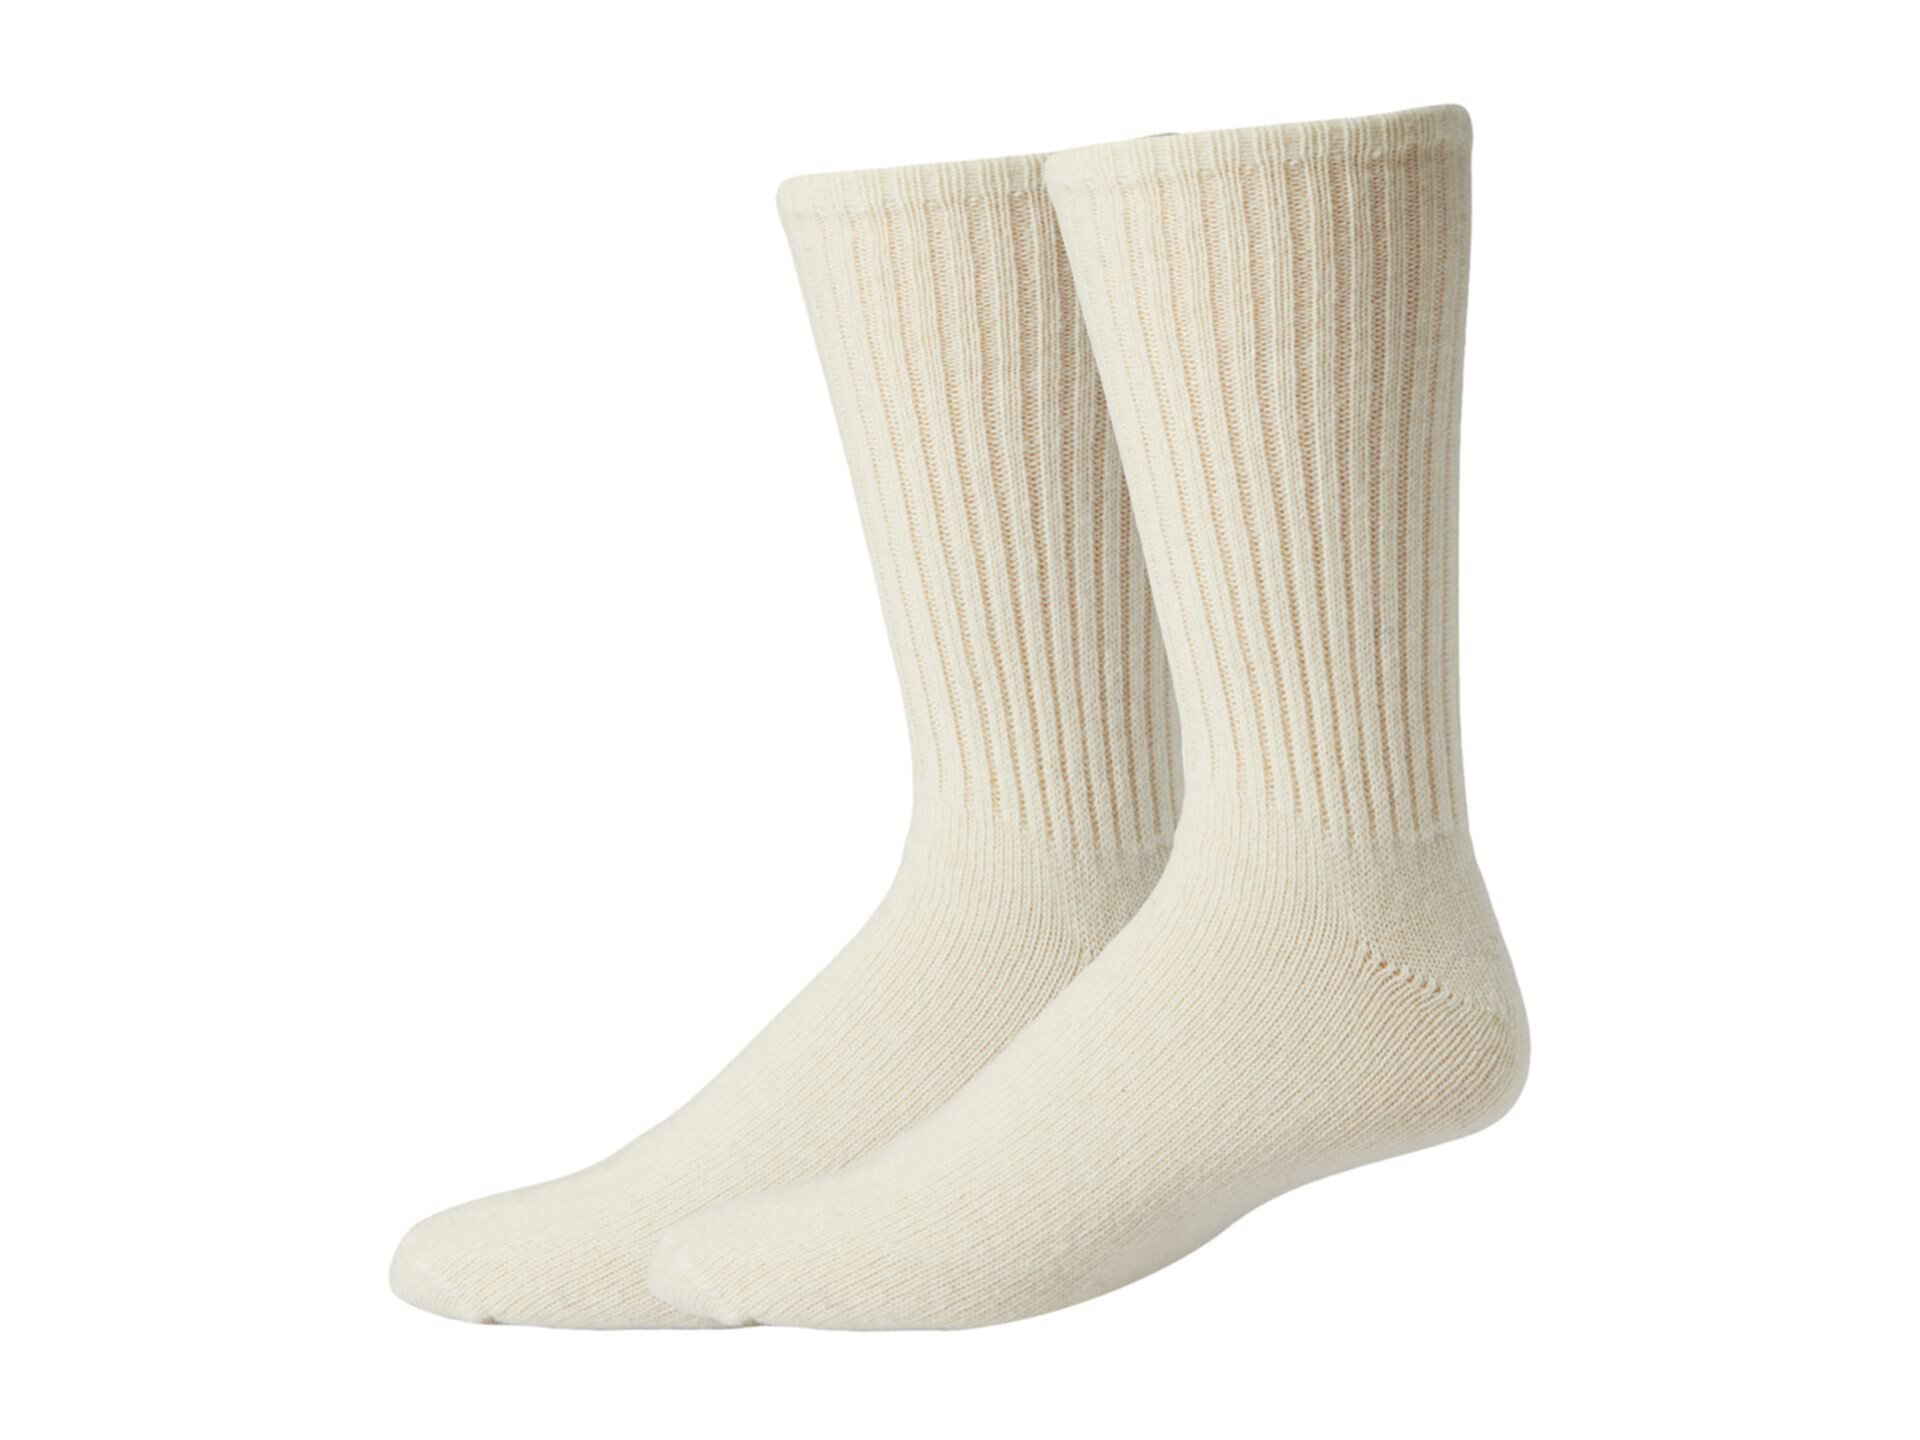 625 Original Шерстяные спортивные носки, 2 шт. в упаковке Wigwam